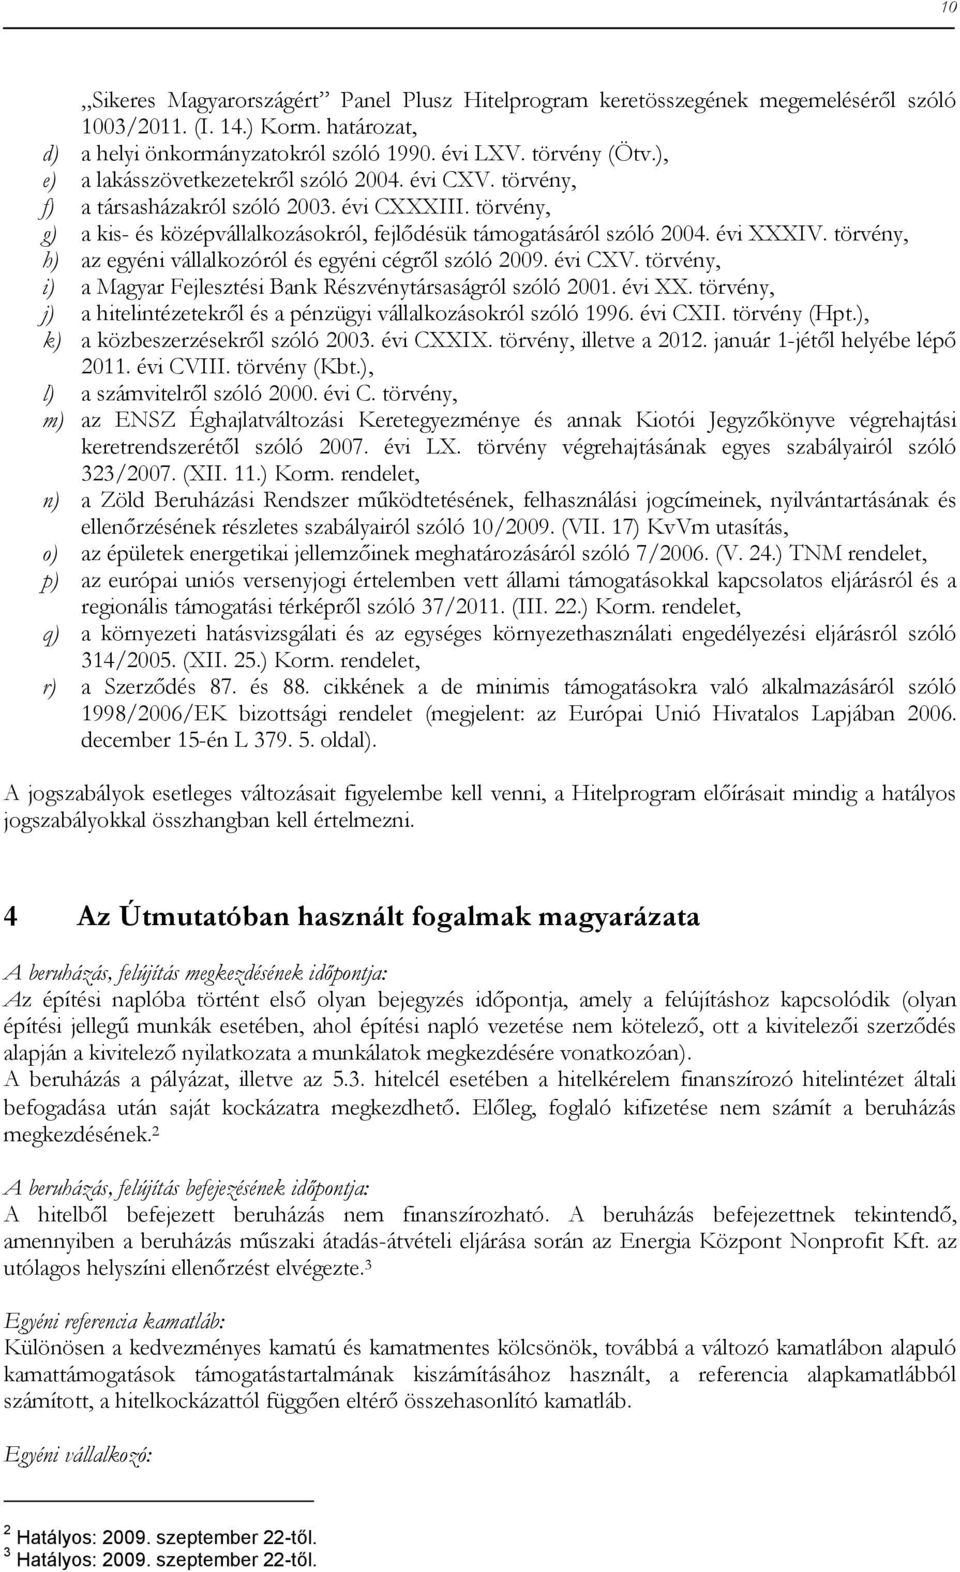 törvény, h) az egyéni vállalkozóról és egyéni cégről szóló 2009. évi CXV. törvény, i) a Magyar Fejlesztési Bank Részvénytársaságról szóló 2001. évi XX.